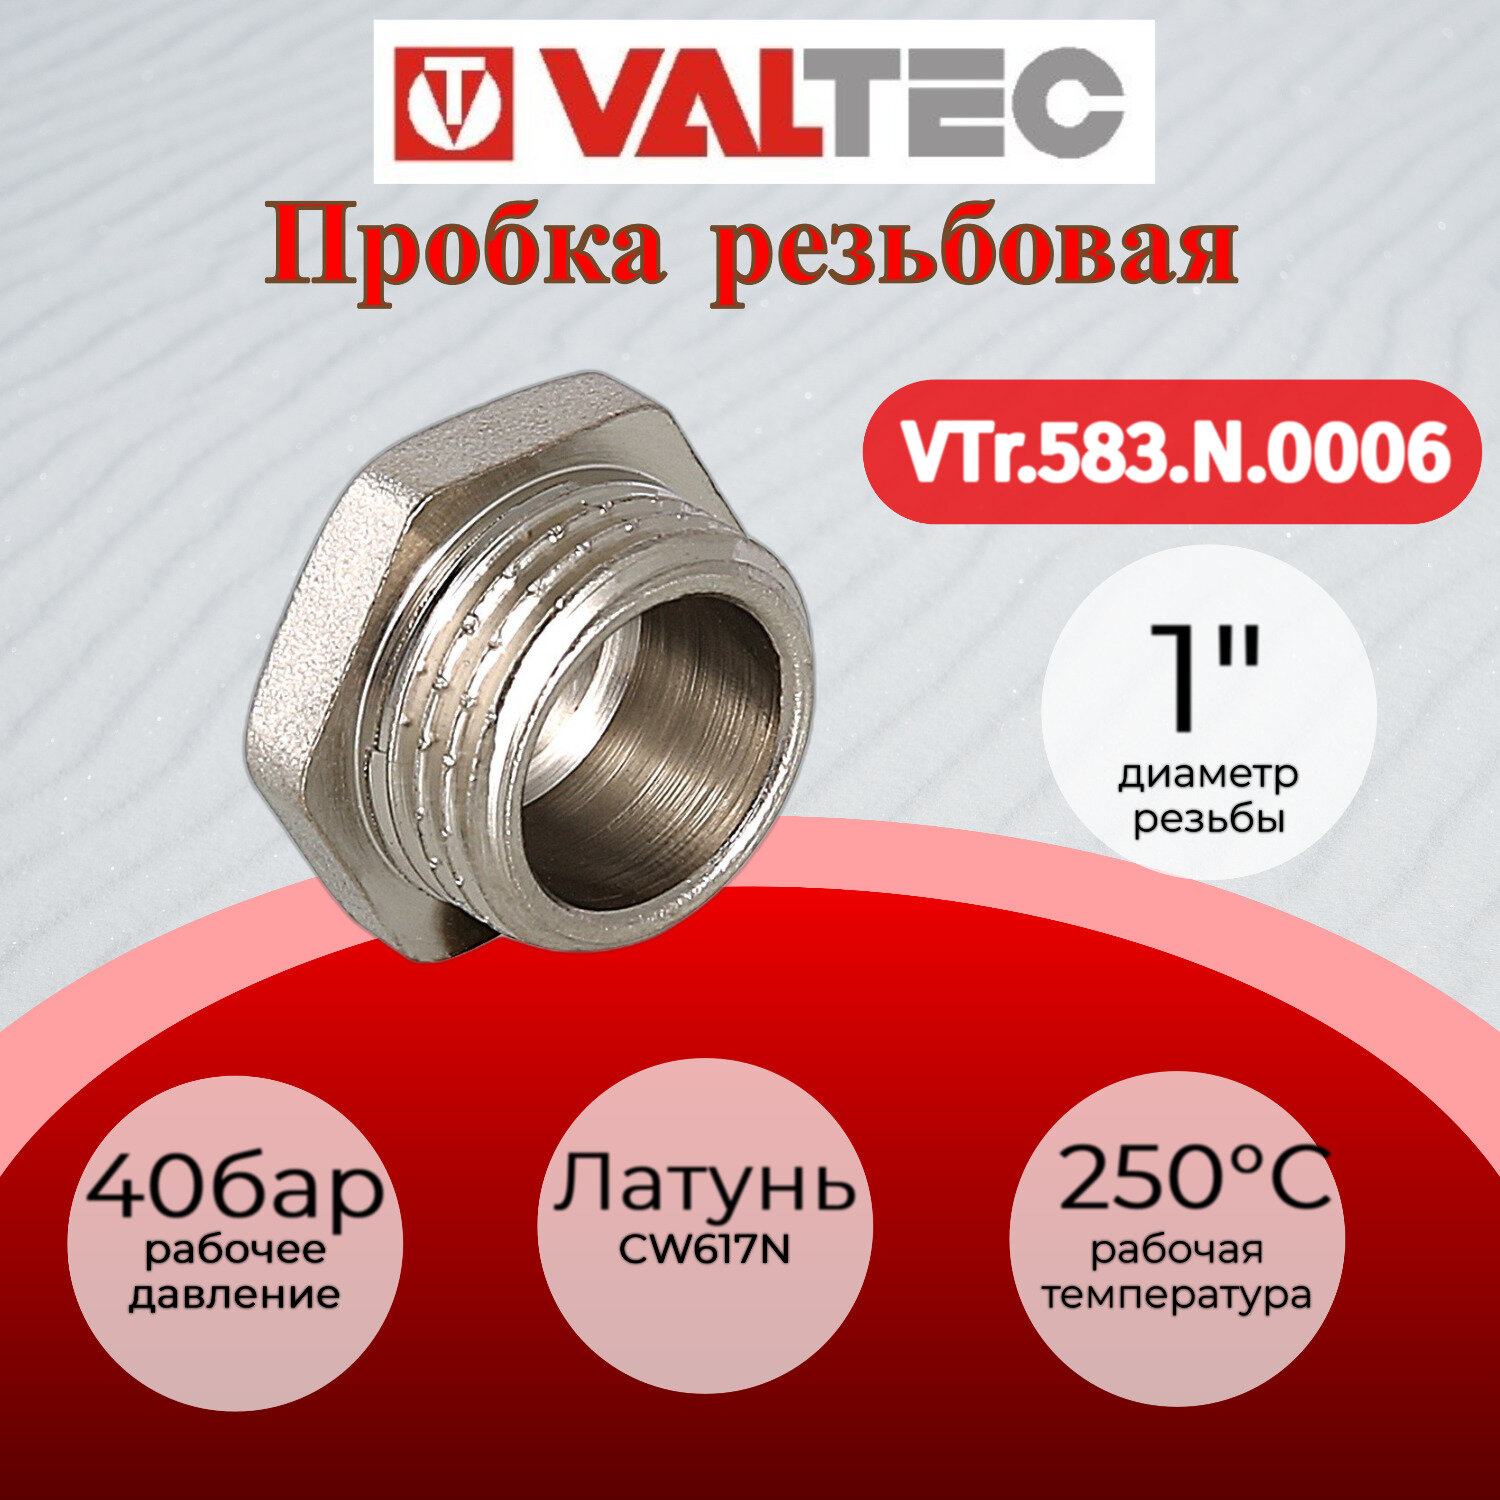 Пробка 1" наружная резьба VALTEC VTr.583. N.0006